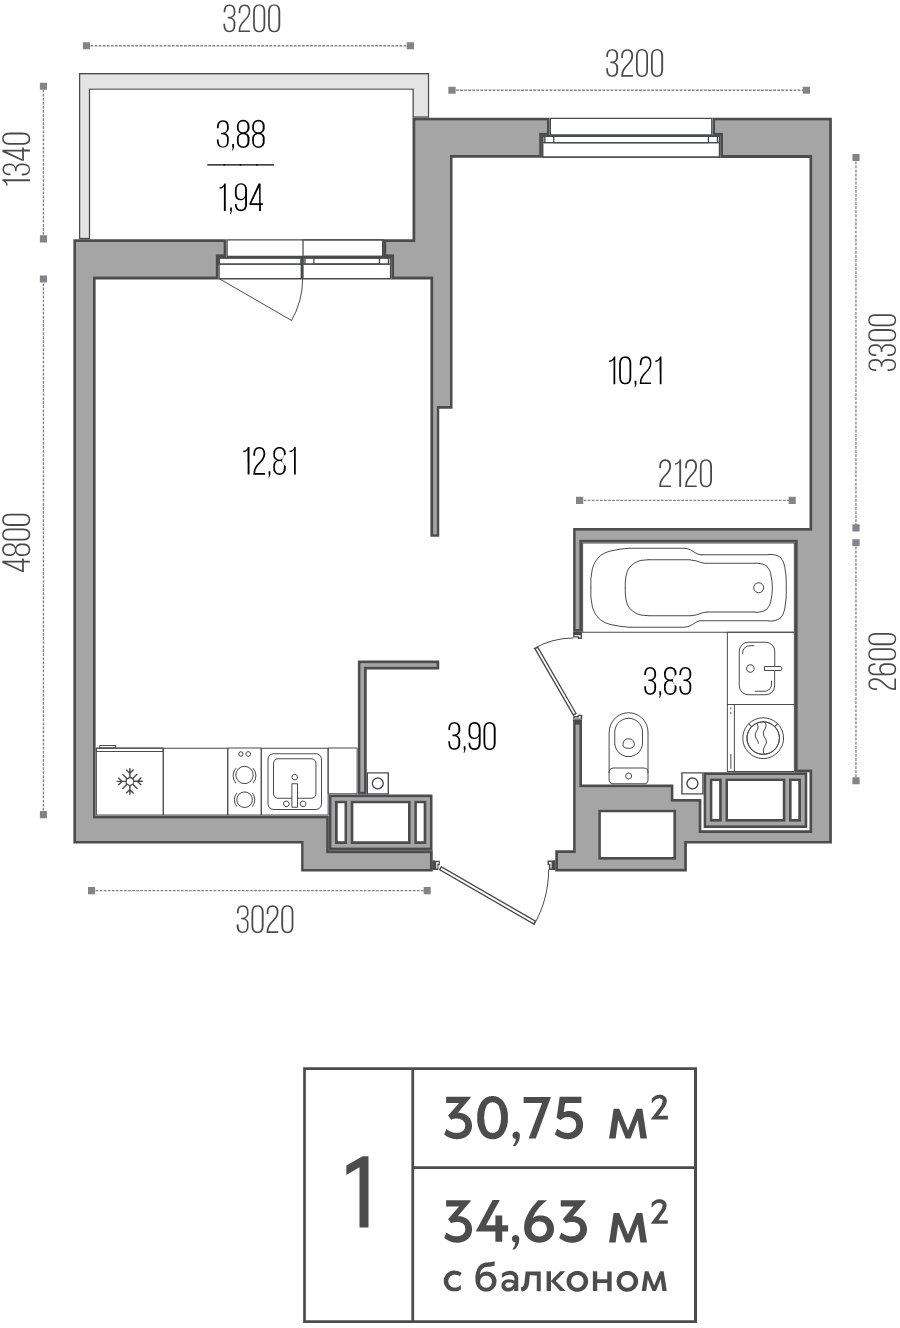 1-комнатная квартира, 30.75 м² в ЖК "Simple" - планировка, фото №1